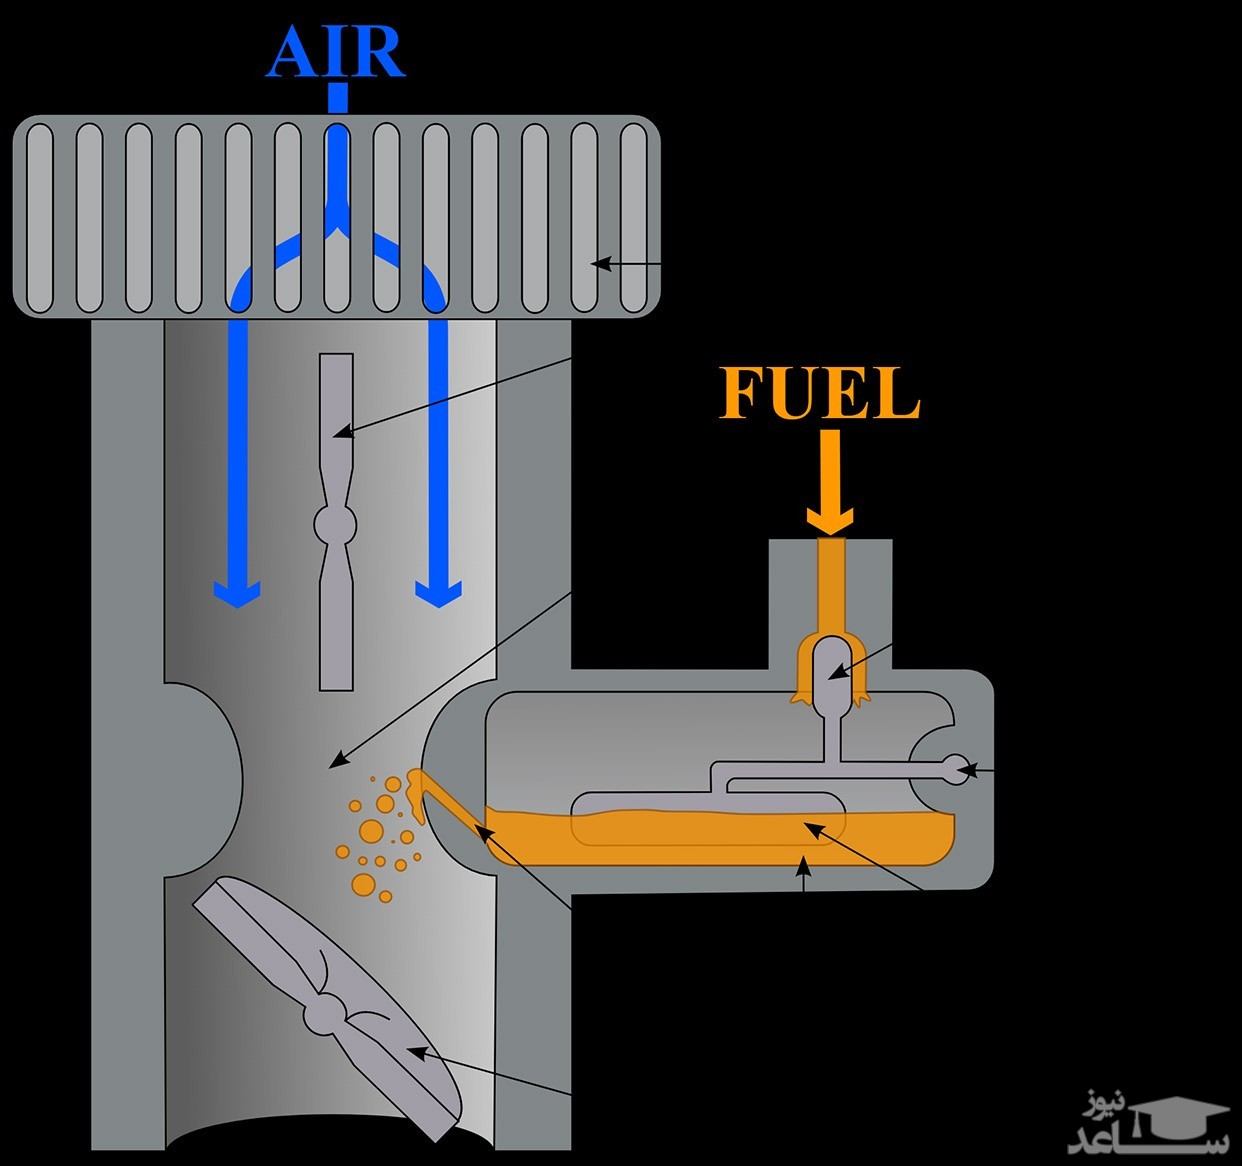 سیستم سوخت رسانی کاربراتوری